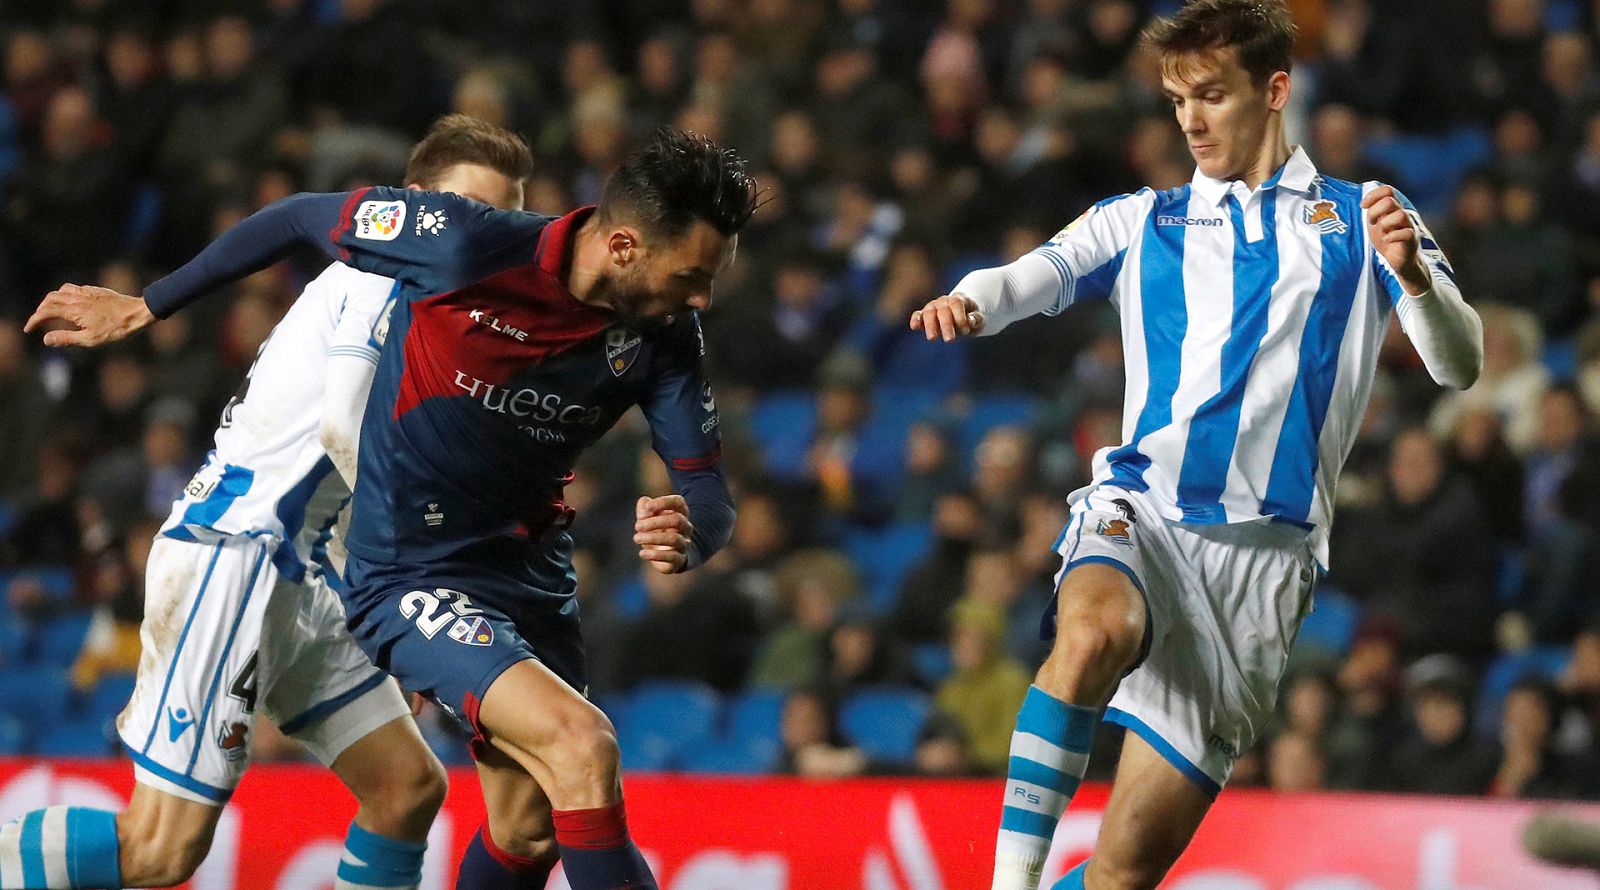 El jugador de la Real Sociedad, Diego Llorente, lucha un balón con Enric Gallego, del Huesca.